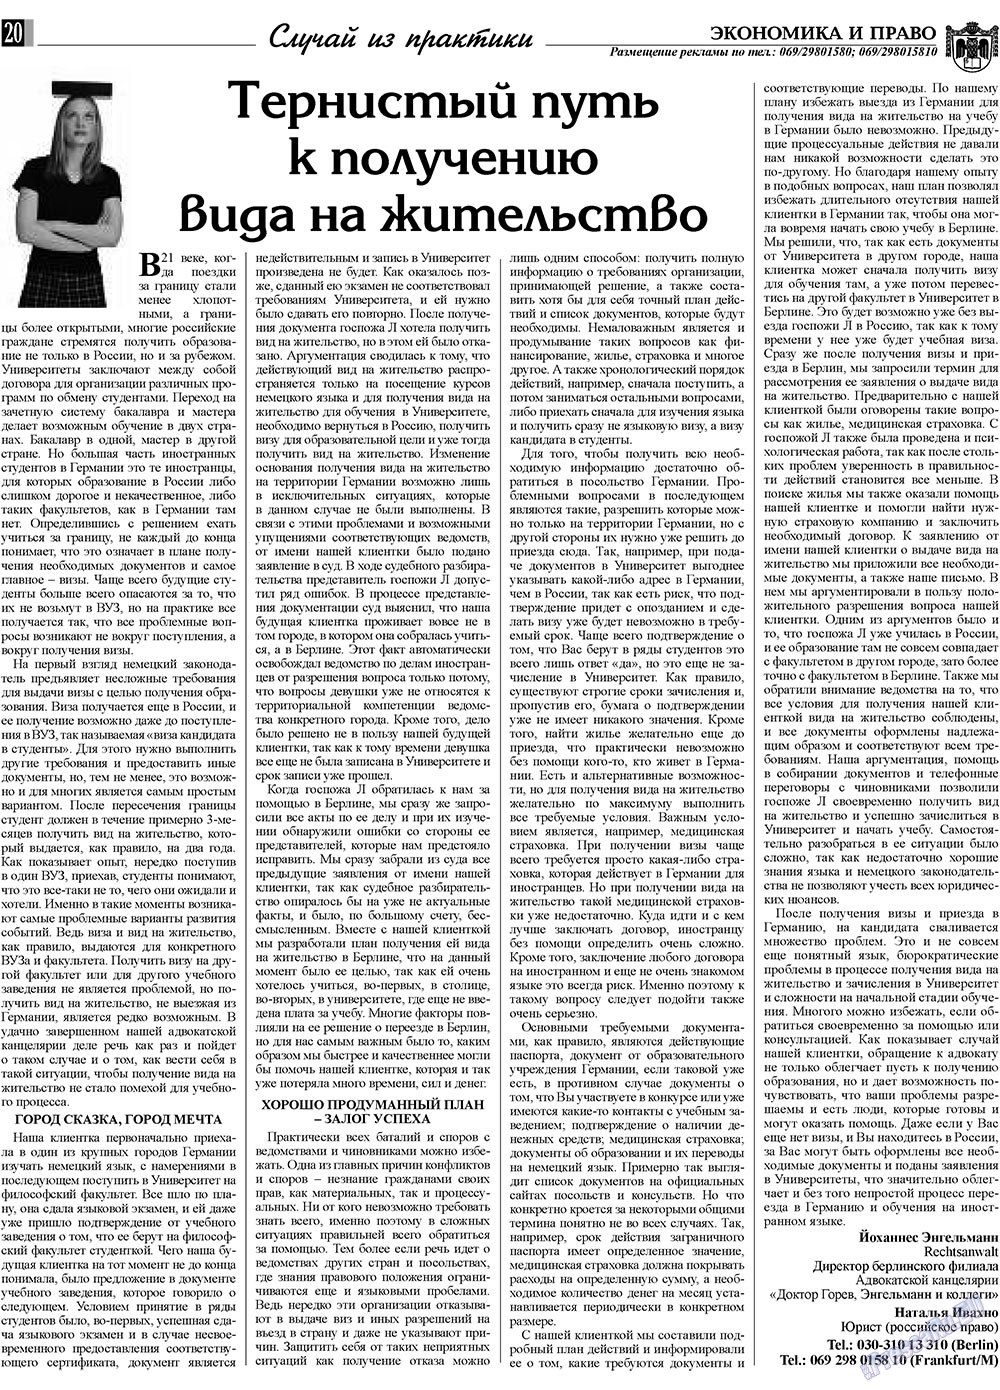 Экономика и право, газета. 2009 №4 стр.20